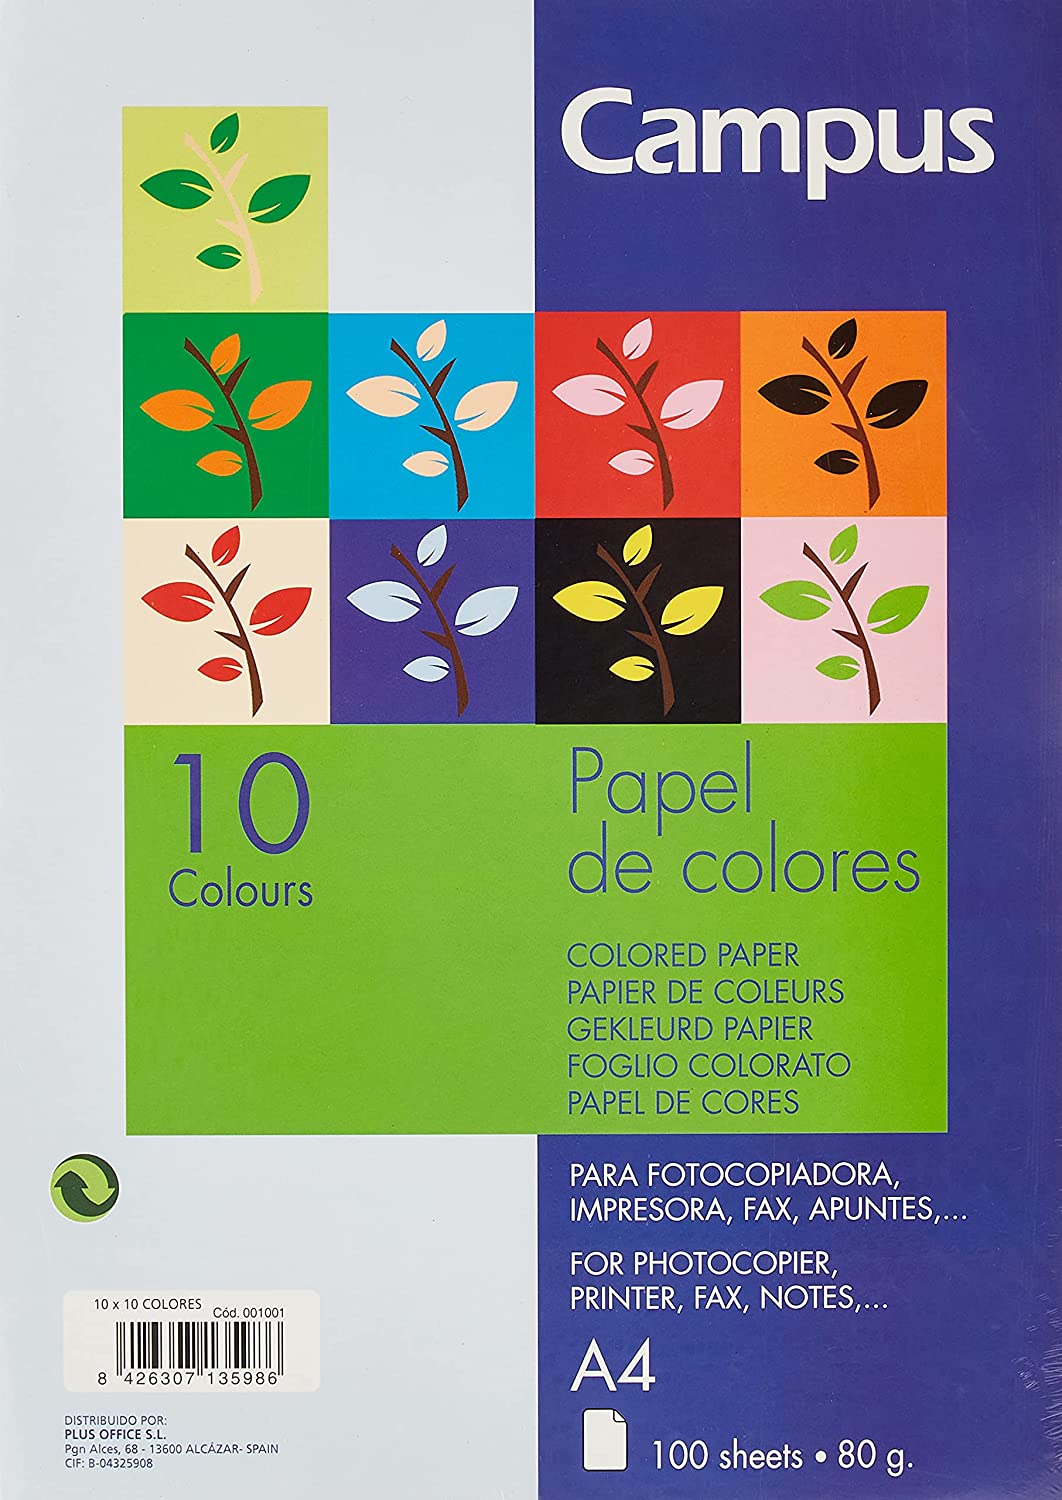 Paquete Folios Colores: ¡Elige tu Color Favorito!